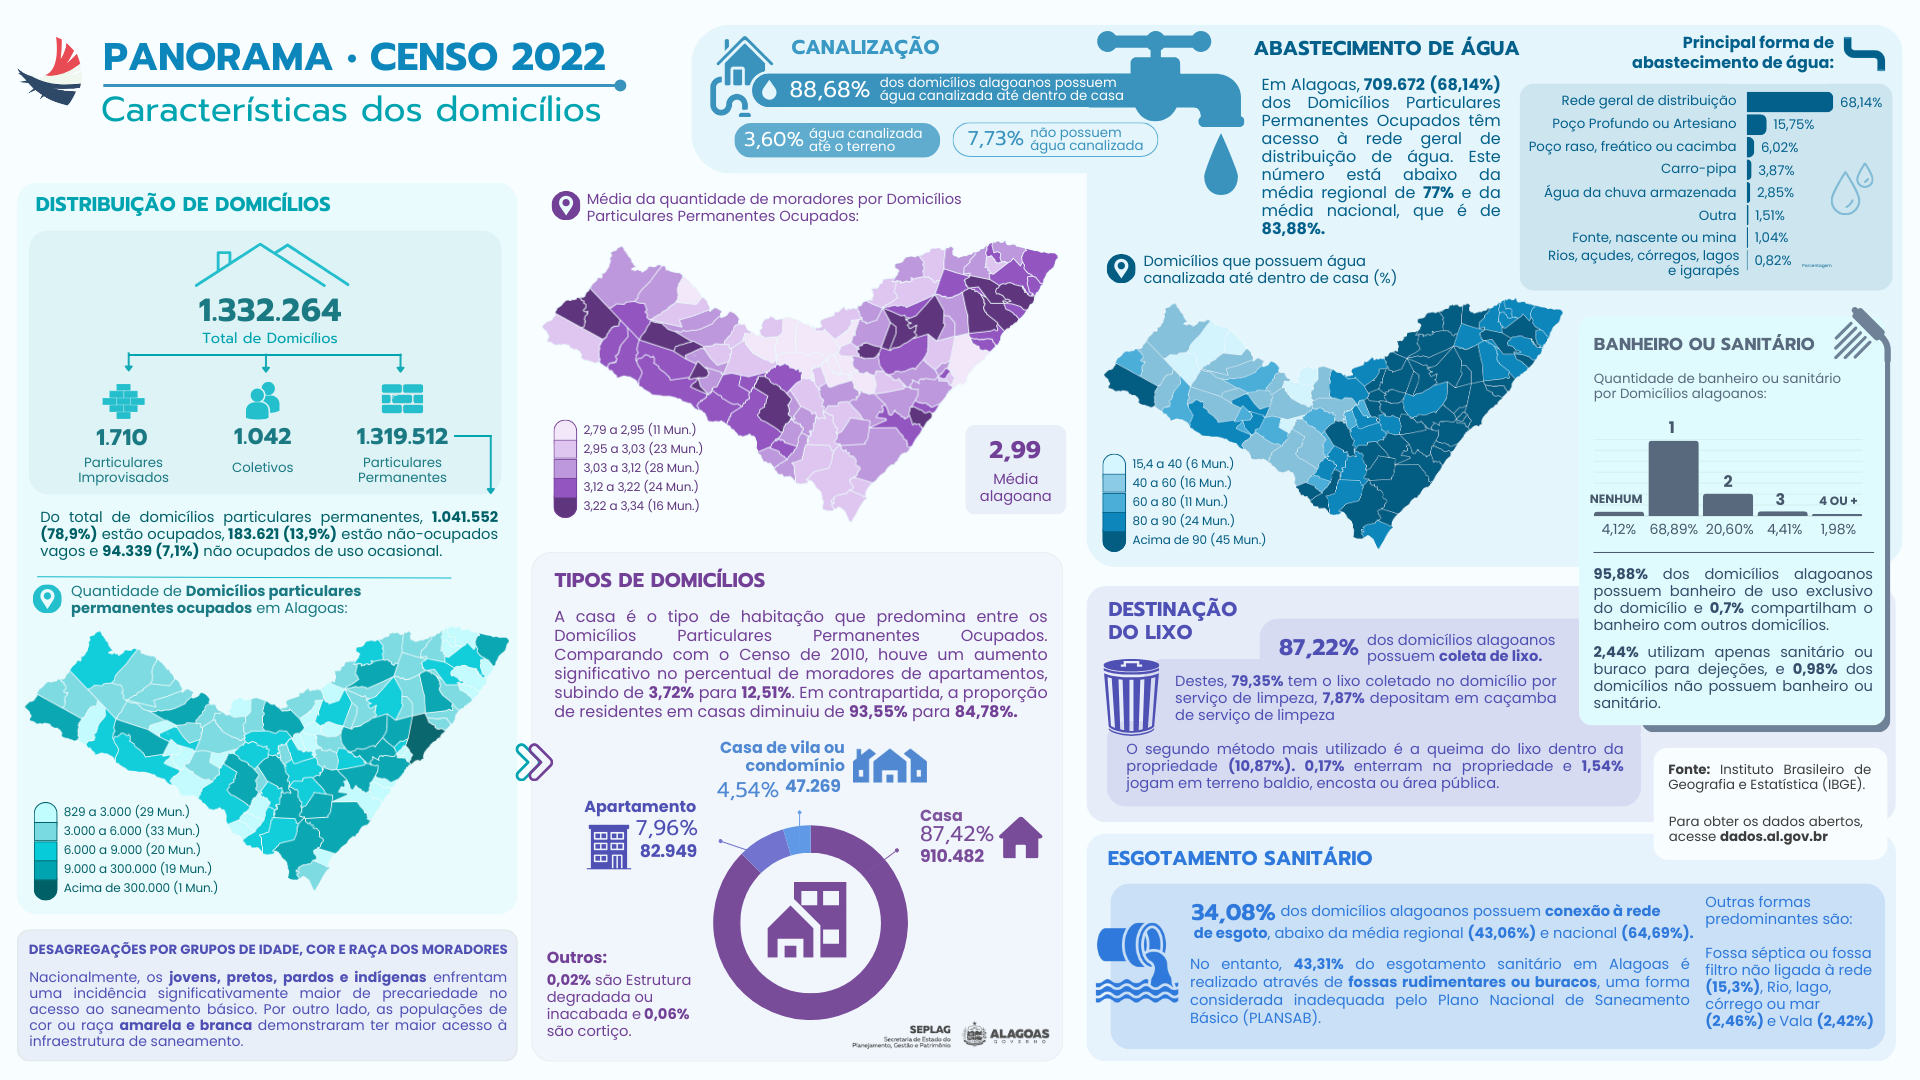 $Panorama do Censo 2022 (Características dos domicílios)